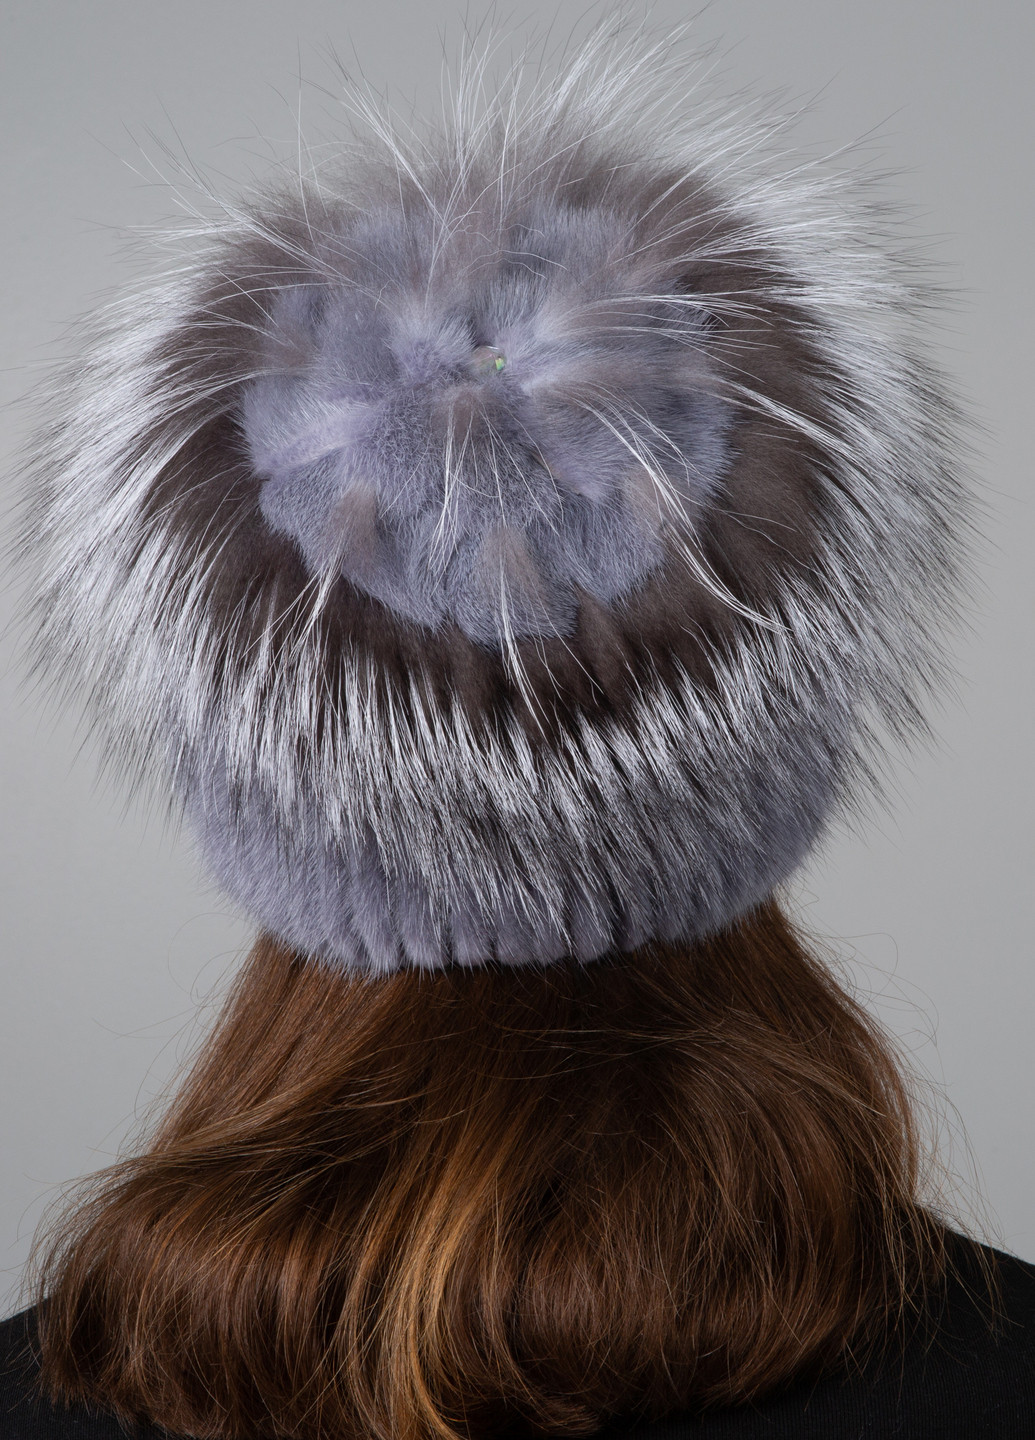 Женская шапка из вязаного меха норки с украшением из меха чернобурки Меховой Стиль звездочка (254800506)